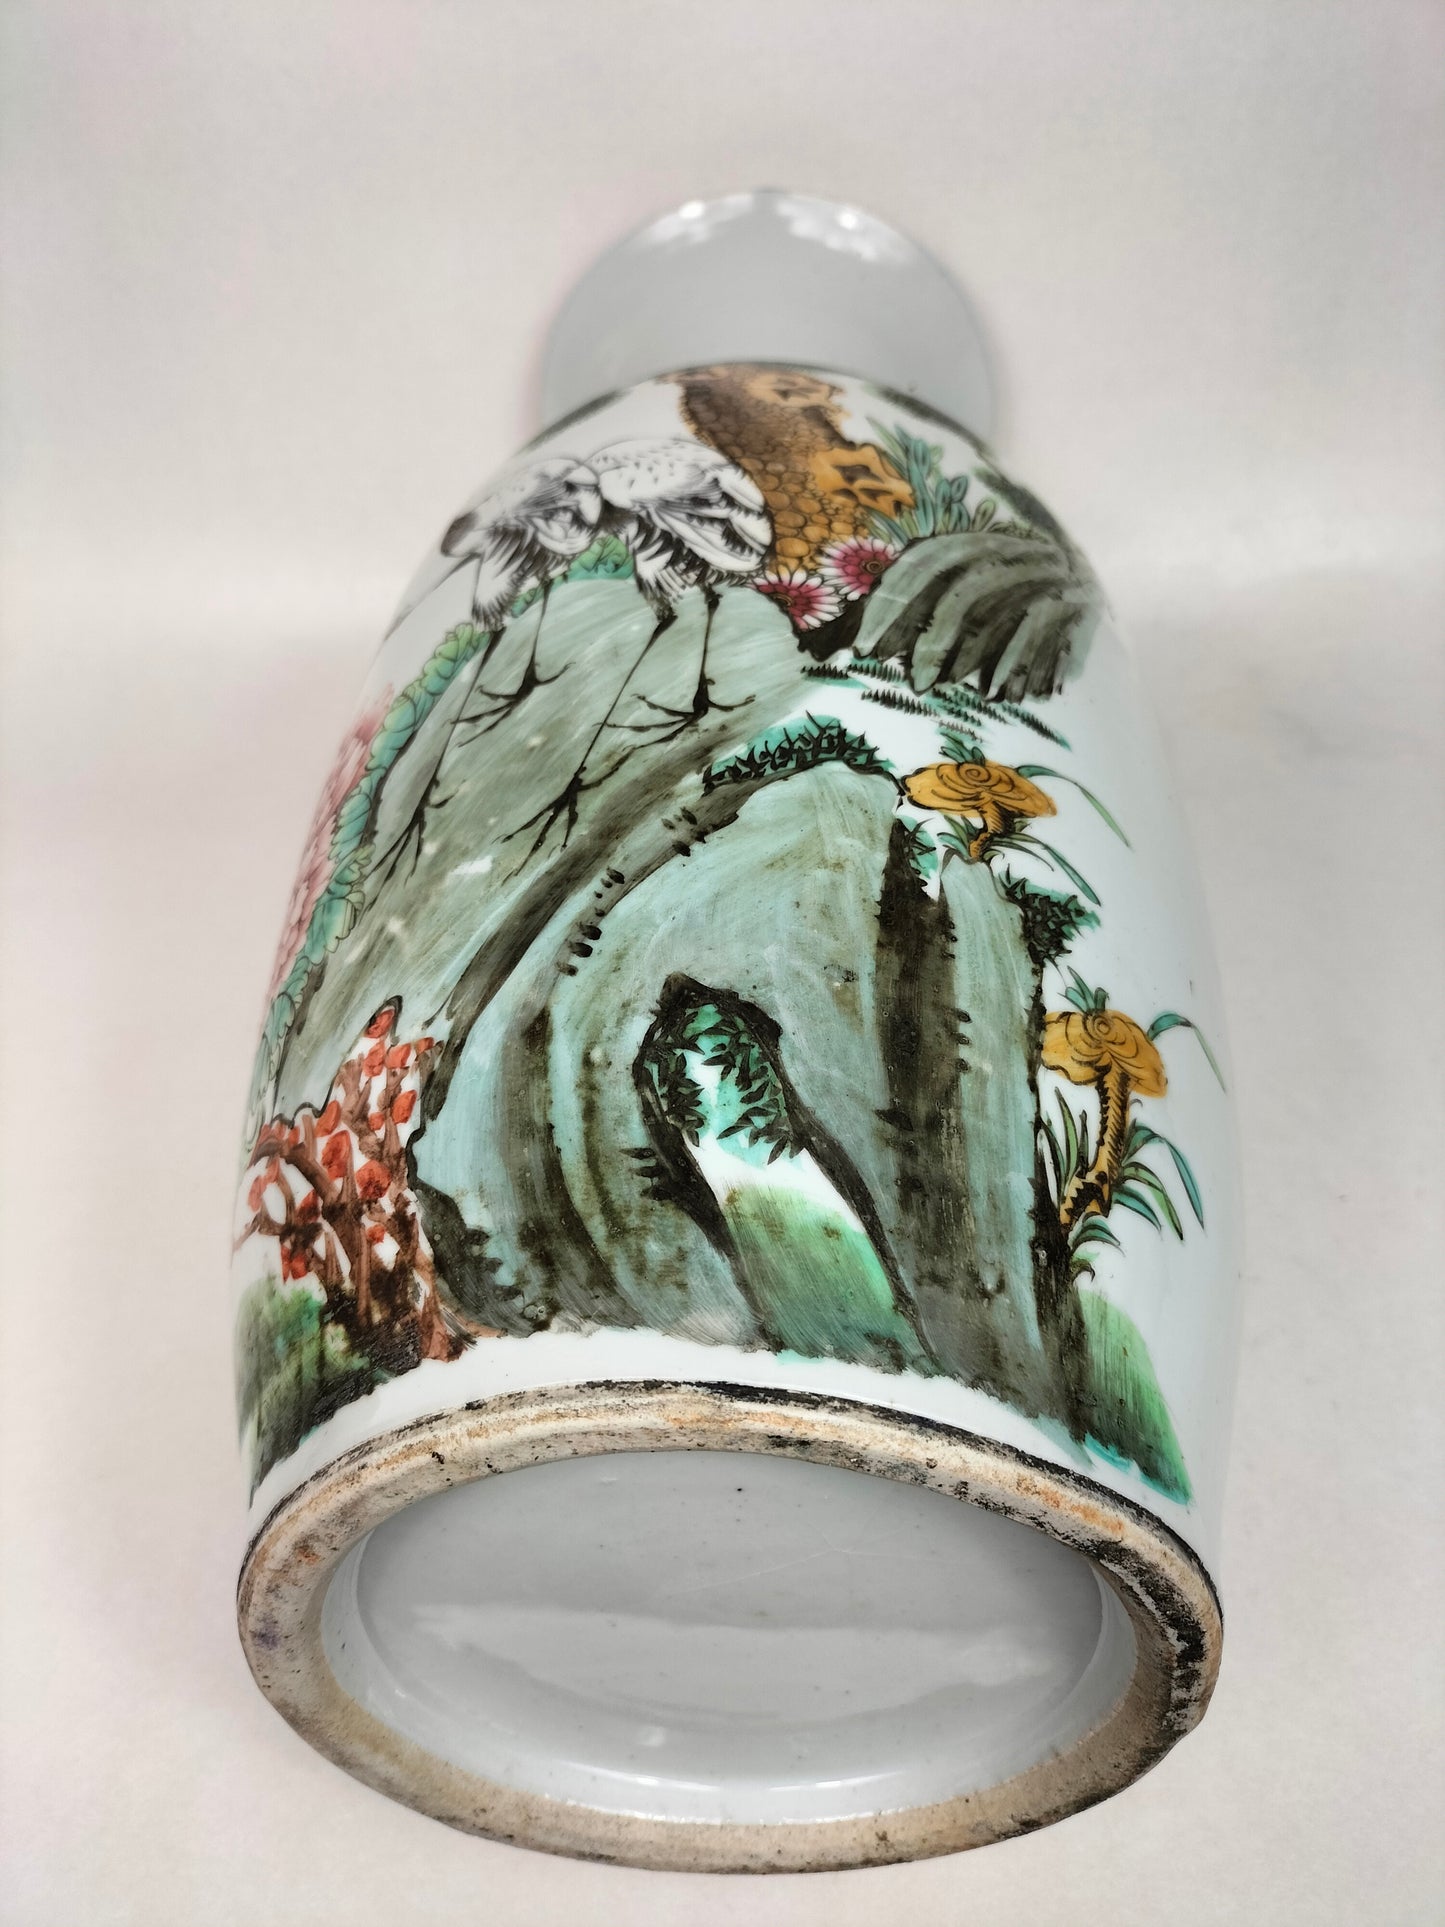 大型古董中国花瓶，饰有仙鹤和花朵//民国时期（1912-1949）